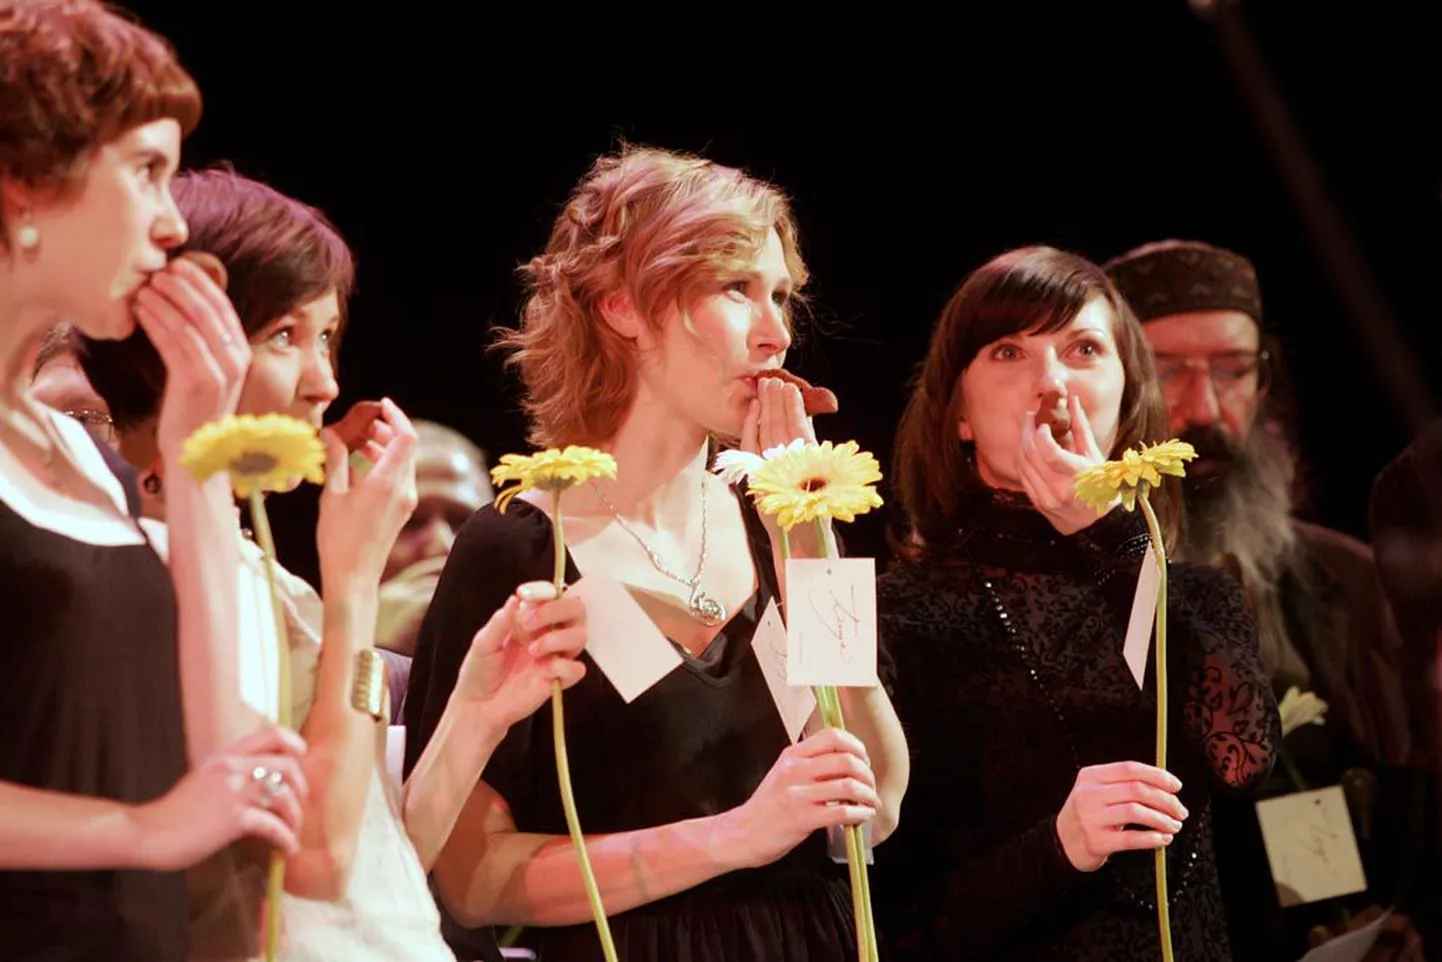 Heategevuskontserdil "Kuula, palun!" laulavad näitlejad Maarja küla toetuseks.